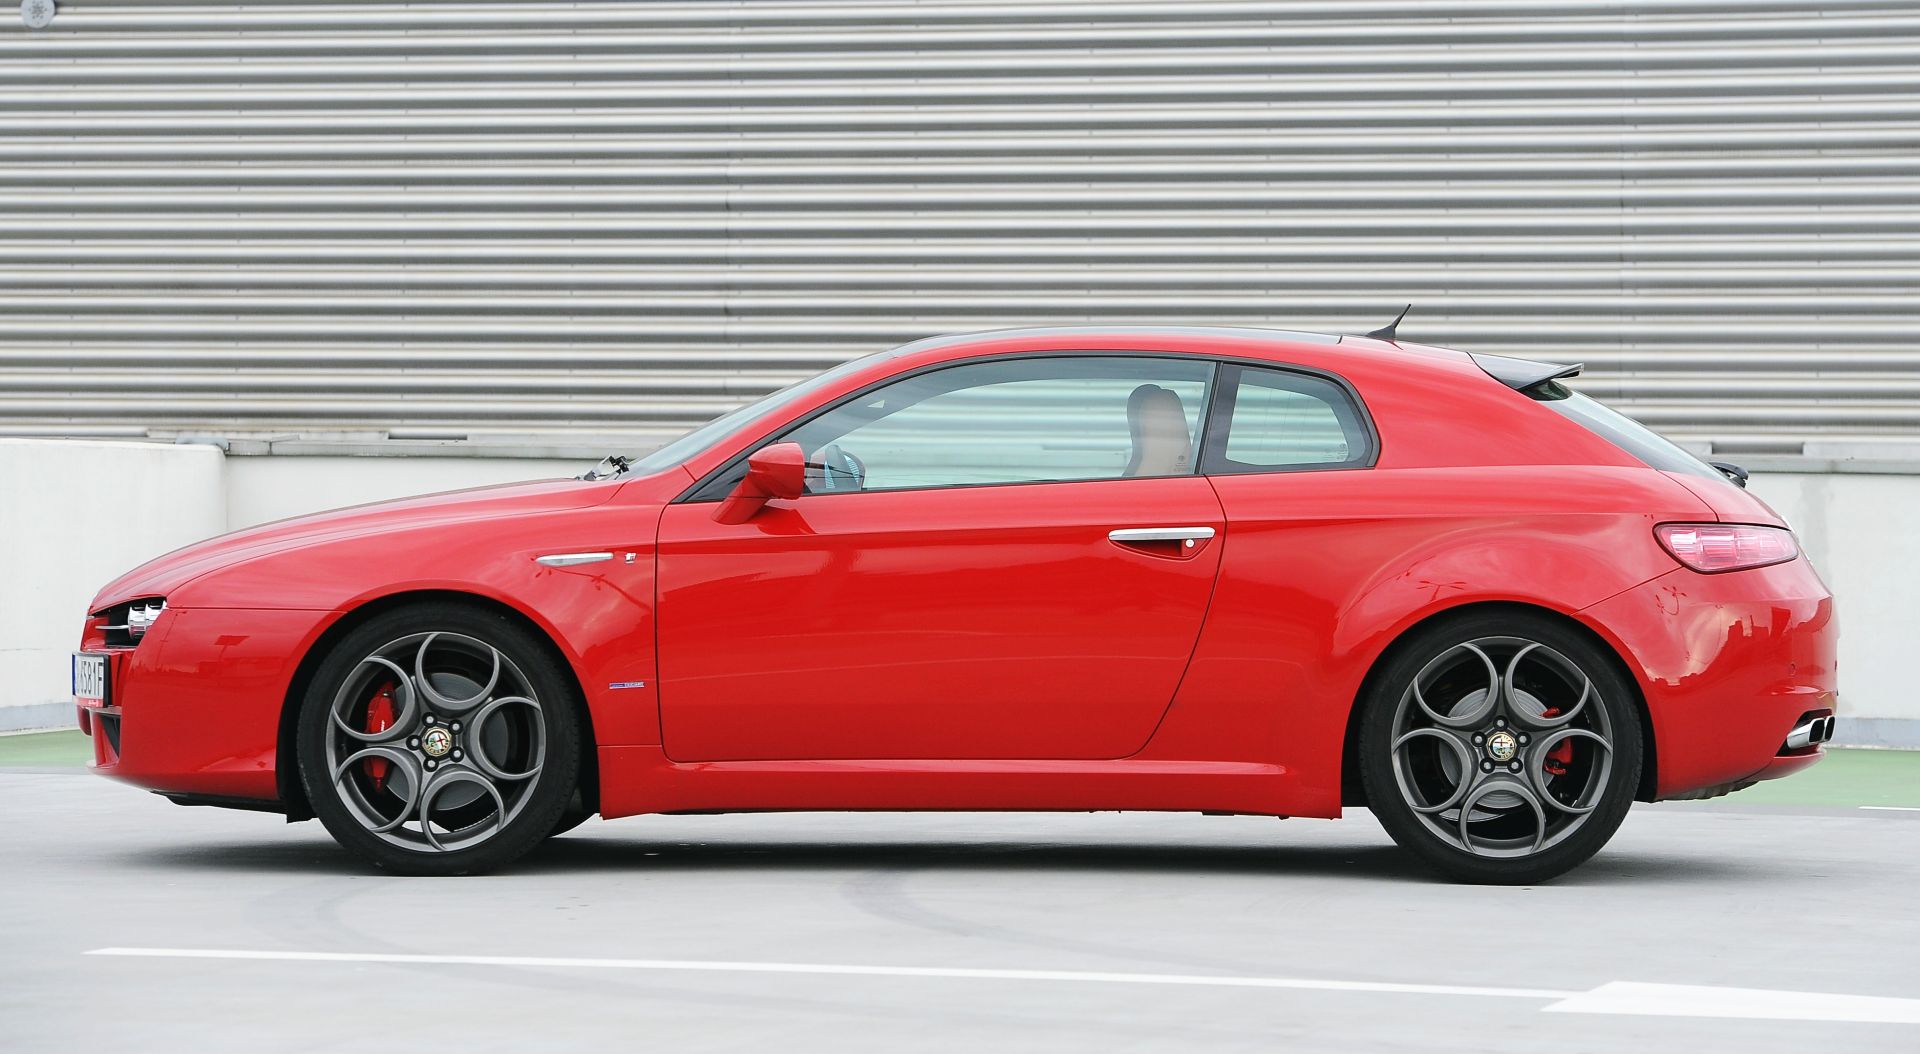 Używana Alfa Romeo 159 (2005-2011) - opinie, dane techniczne, usterki